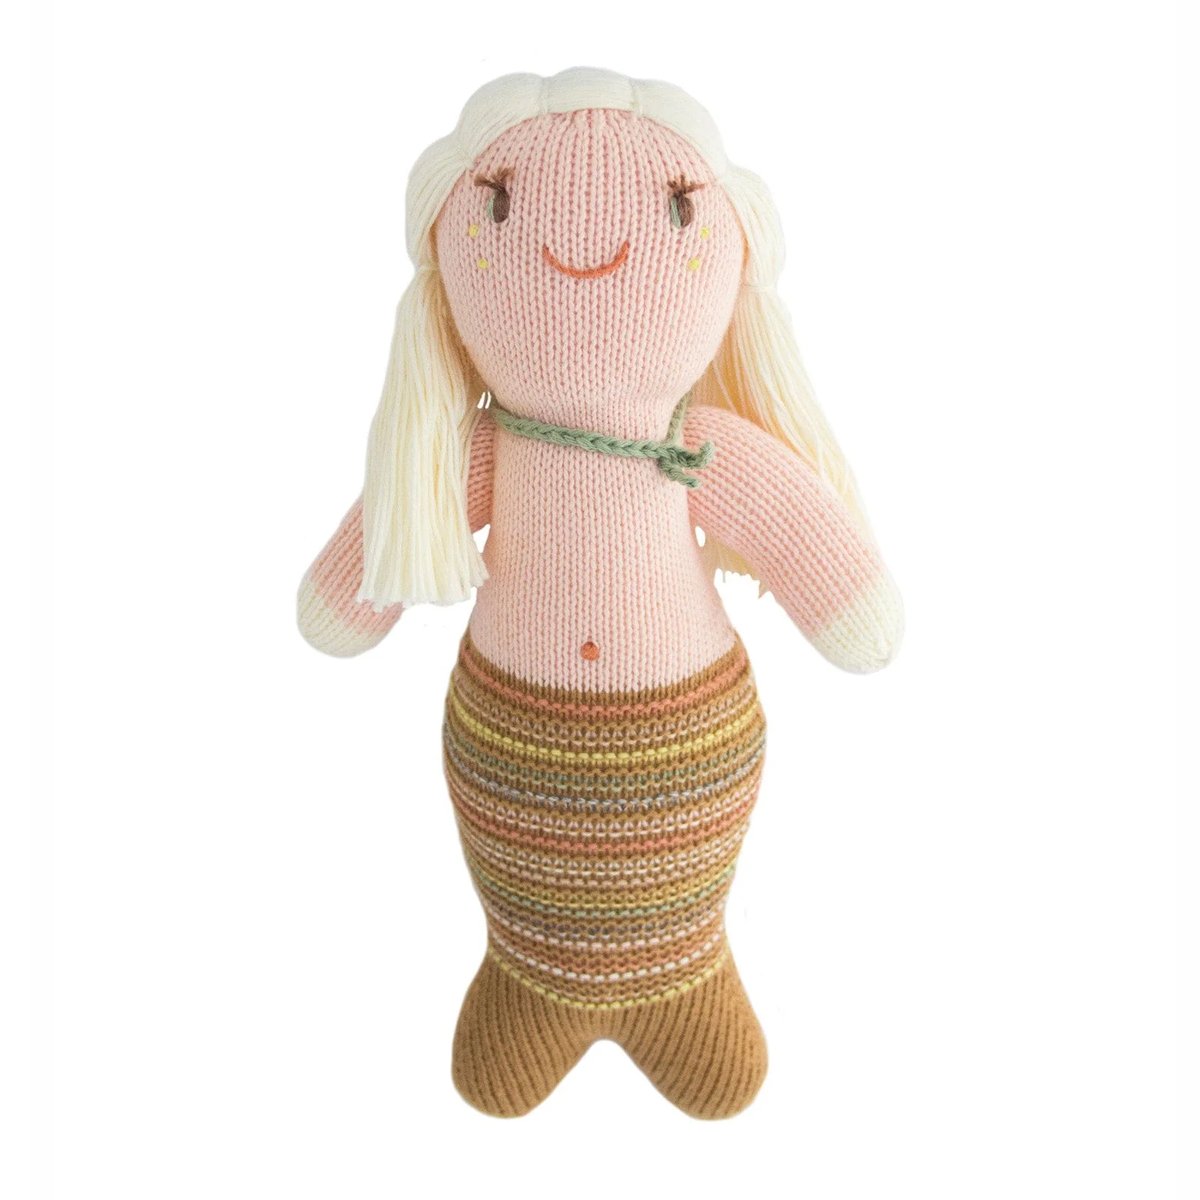 Blabla | "Serenade the Mermaid" kids cotton doll - mondocherry